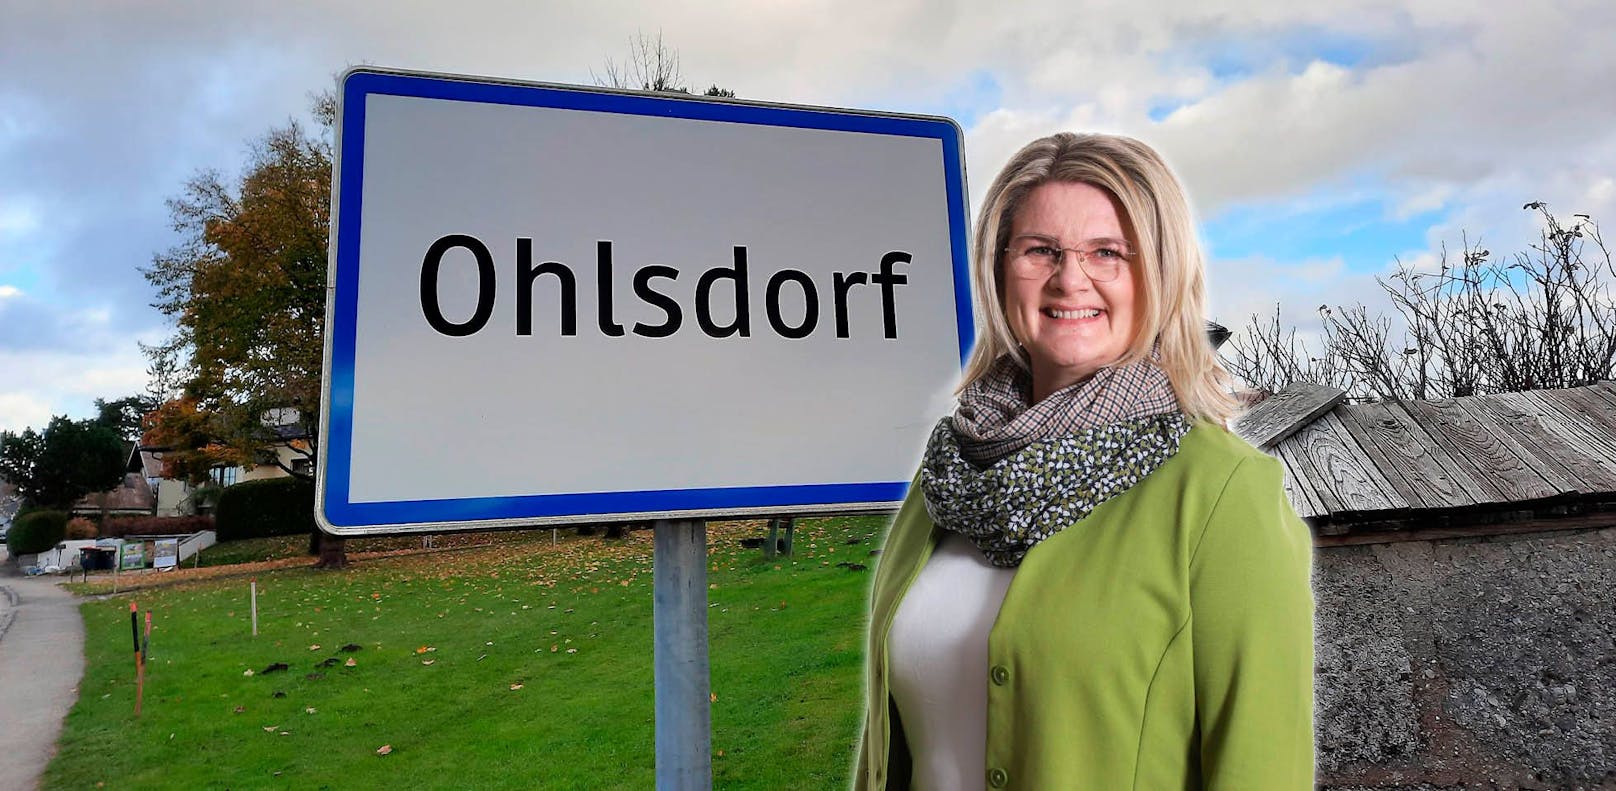 Bgm. Inés Mirlacher ist das Lachen kurz vergangen: In Ohlsdorf wurden mehrere Verkehrsschilder gestohlen. Die Ortstafel steht mittlerweile wieder.